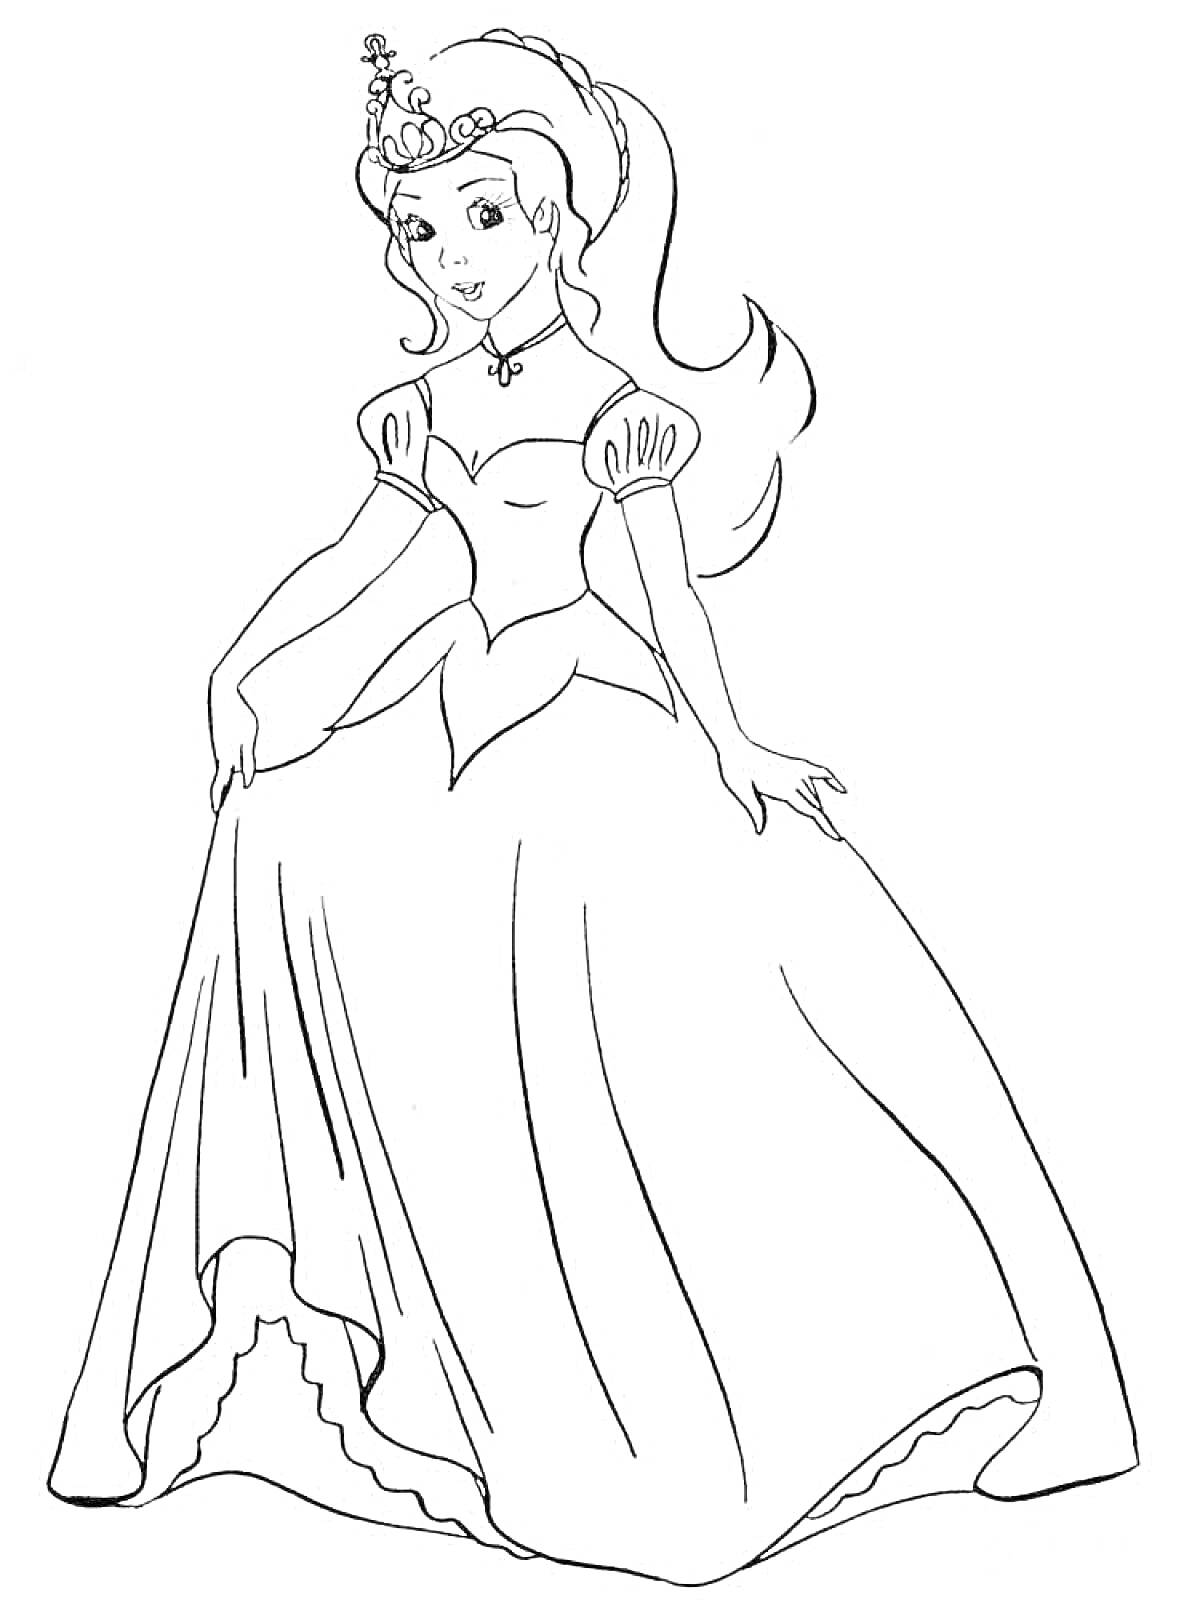 Раскраска Принцесса с короной и длинным платьем